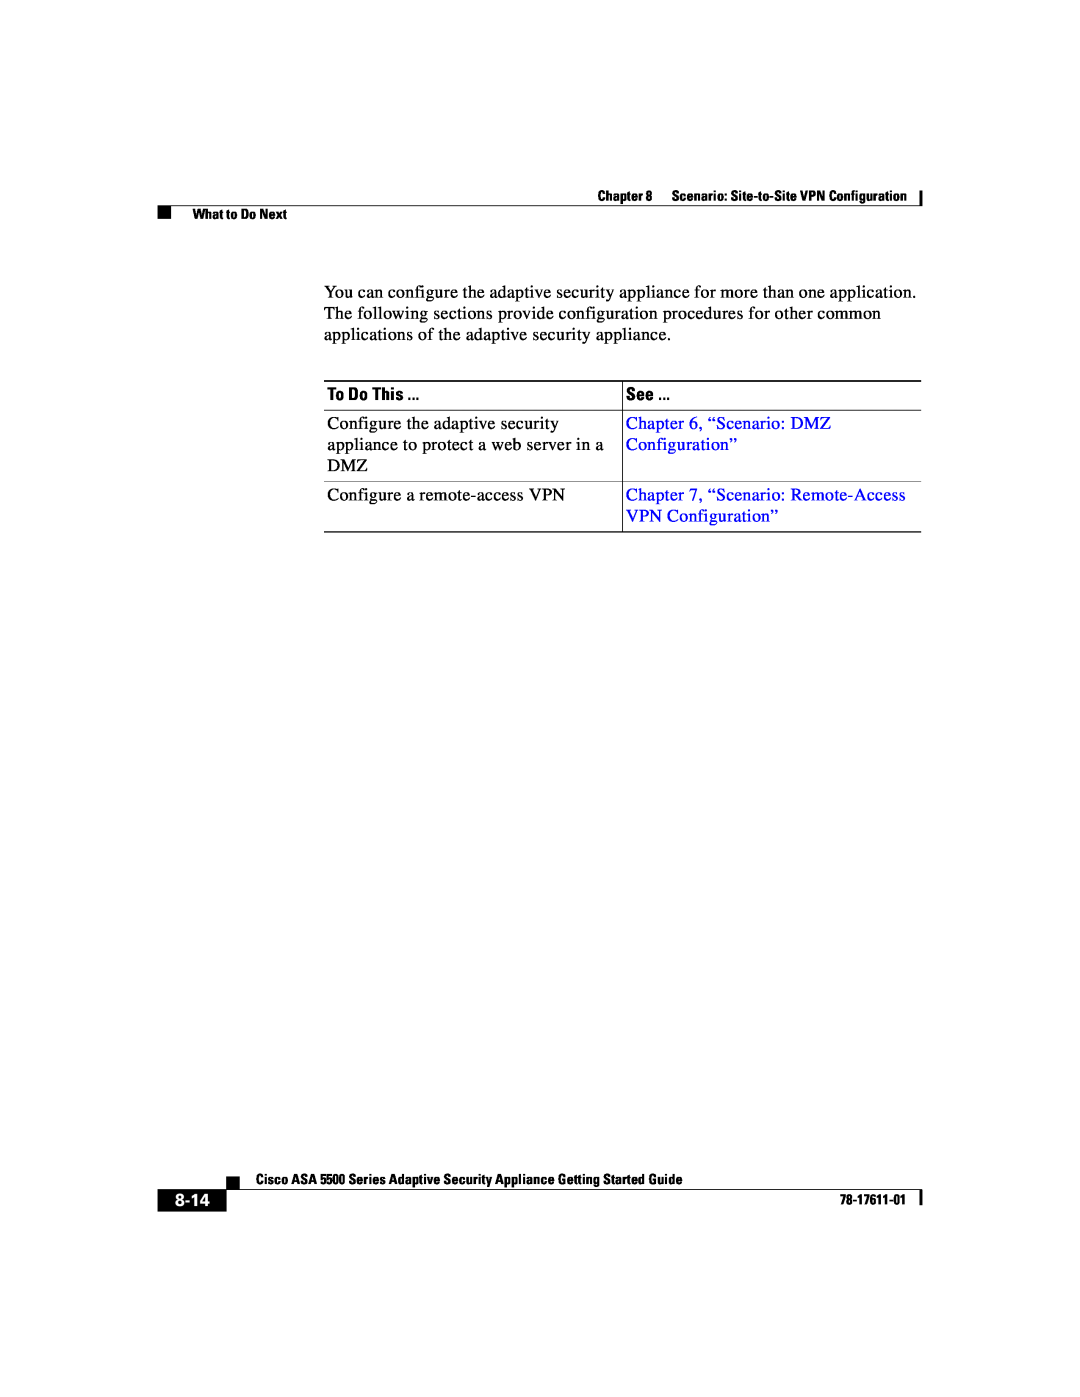 Cisco Systems ASA 5500 manual To Do This, “Scenario DMZ, “Scenario: Remote-Access, VPN Configuration”, 8-14 